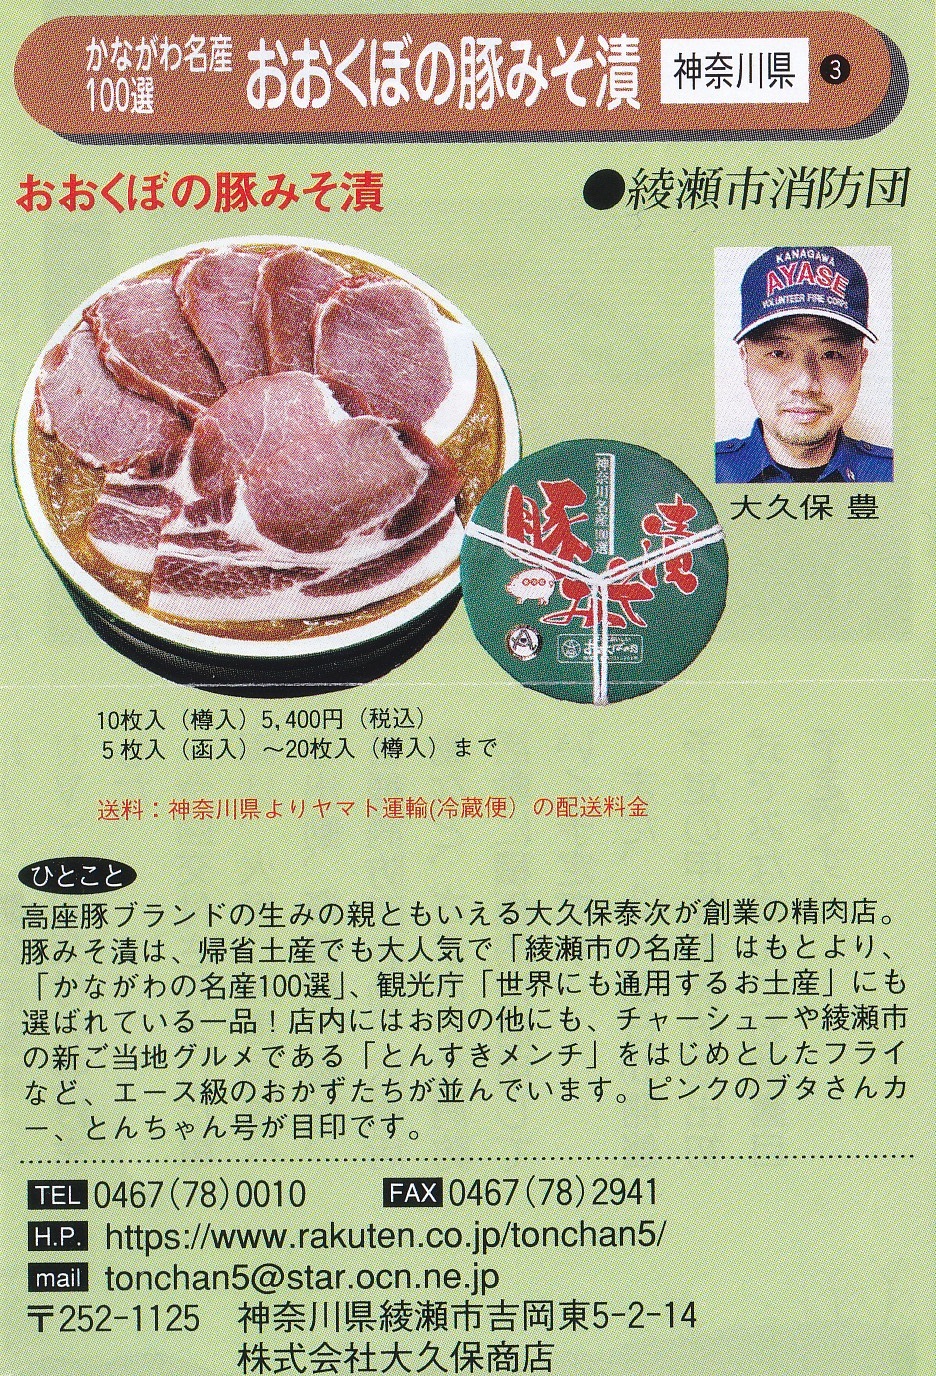 副団長 大久保豊氏の顔写真入りのおおくぼの豚みそ漬の紹介チラシ